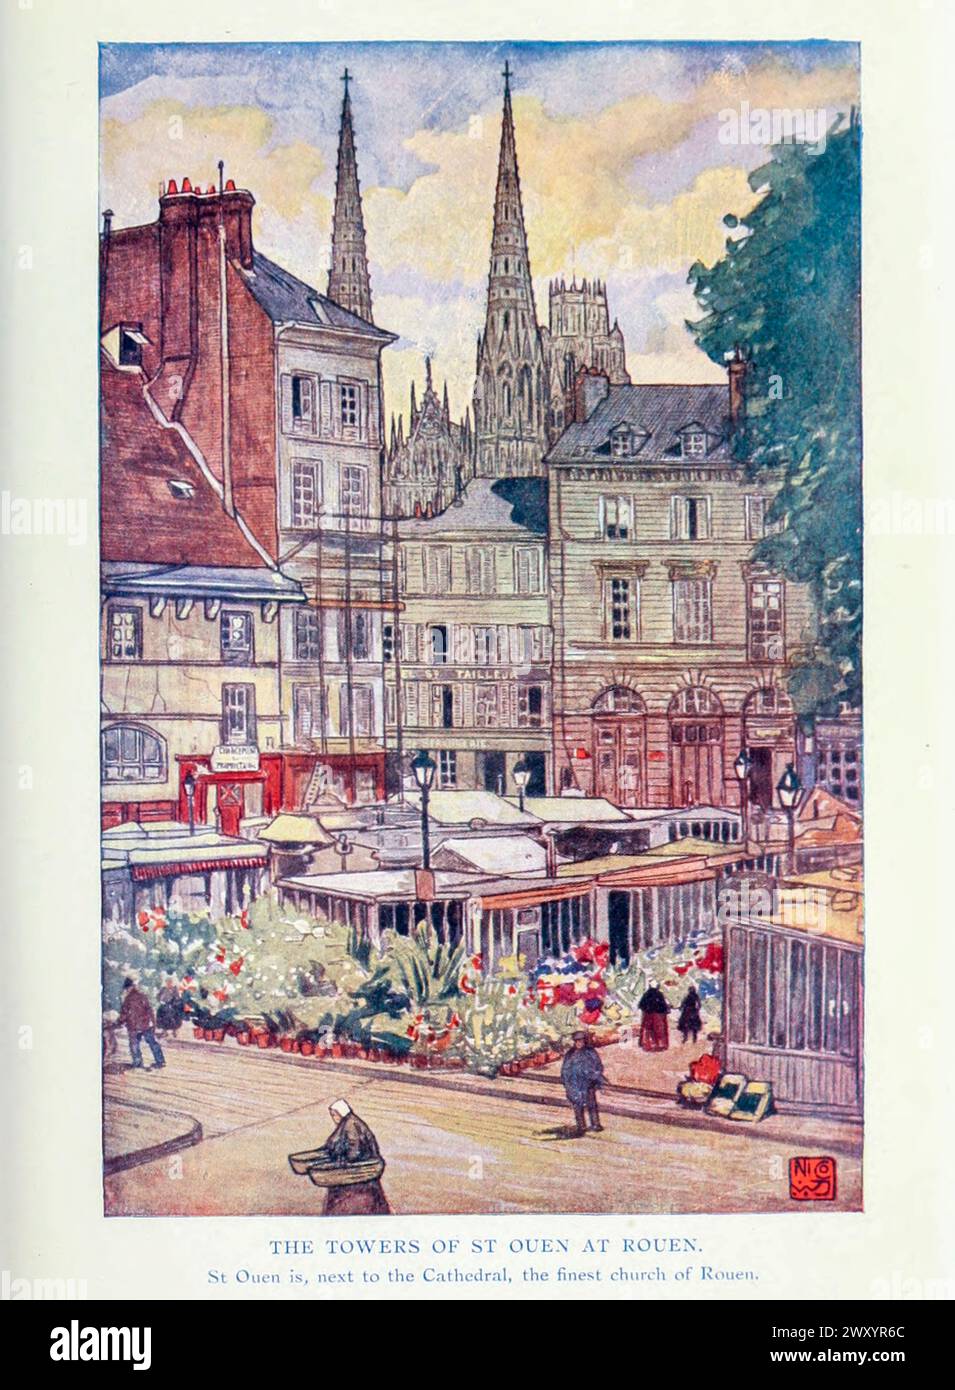 Die Türme von St. Ouen, Rouen 1910 von Gordon Cochrane Home (* 25. Juli 1878 bis 13. Dezember 1969) war ein englischer Landschaftskünstler, Schriftsteller und Illustrator. Rouen ist eine Stadt an der seine in Nordfrankreich. Es ist die Präfektur der Region Normandie und das Departement seine-Maritime. Stockfoto